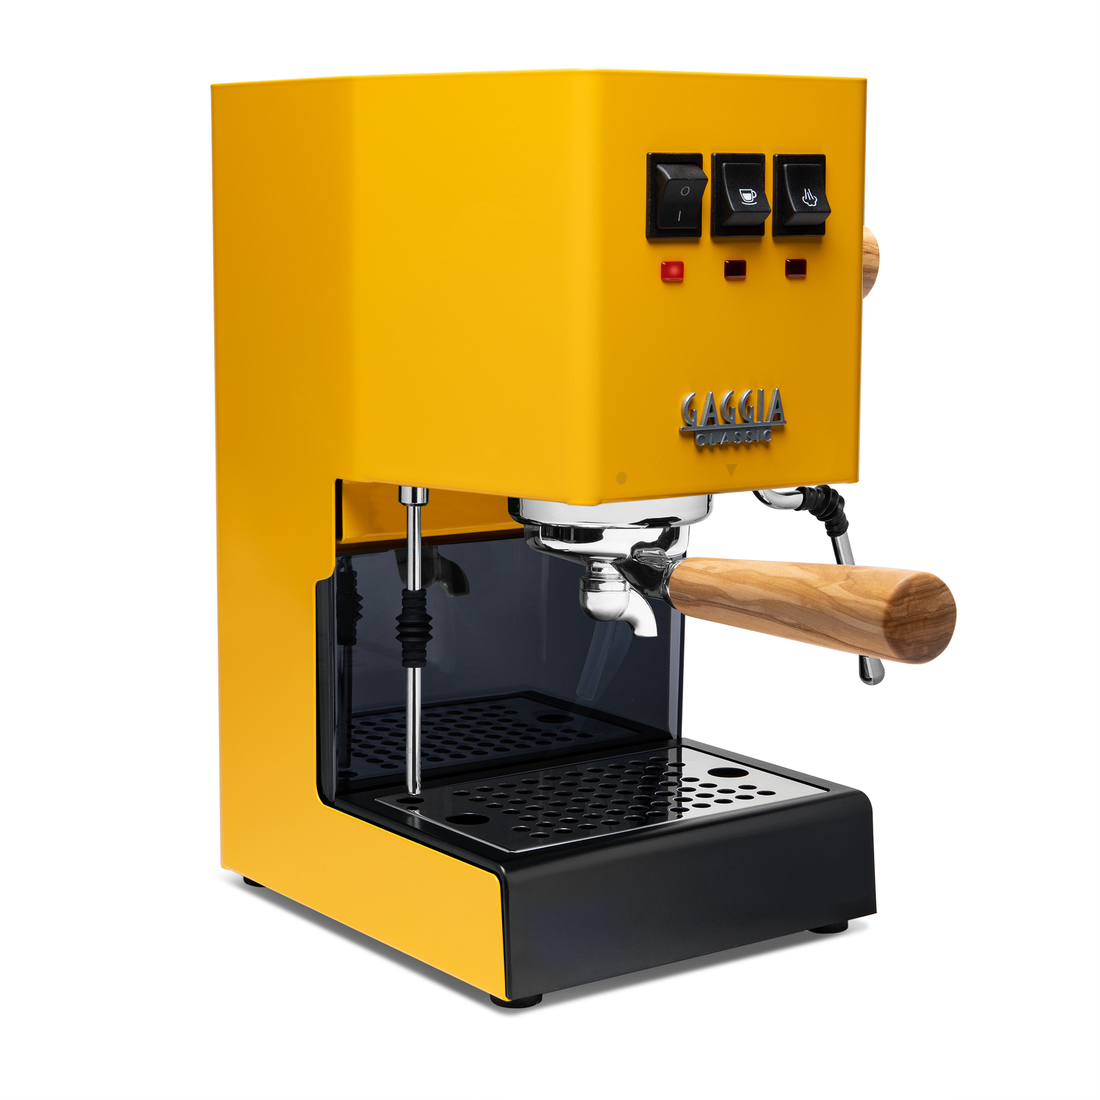 Gaggia Classic Evo Pro Espresso Machine in Sunshine Yellow with Olive Wood